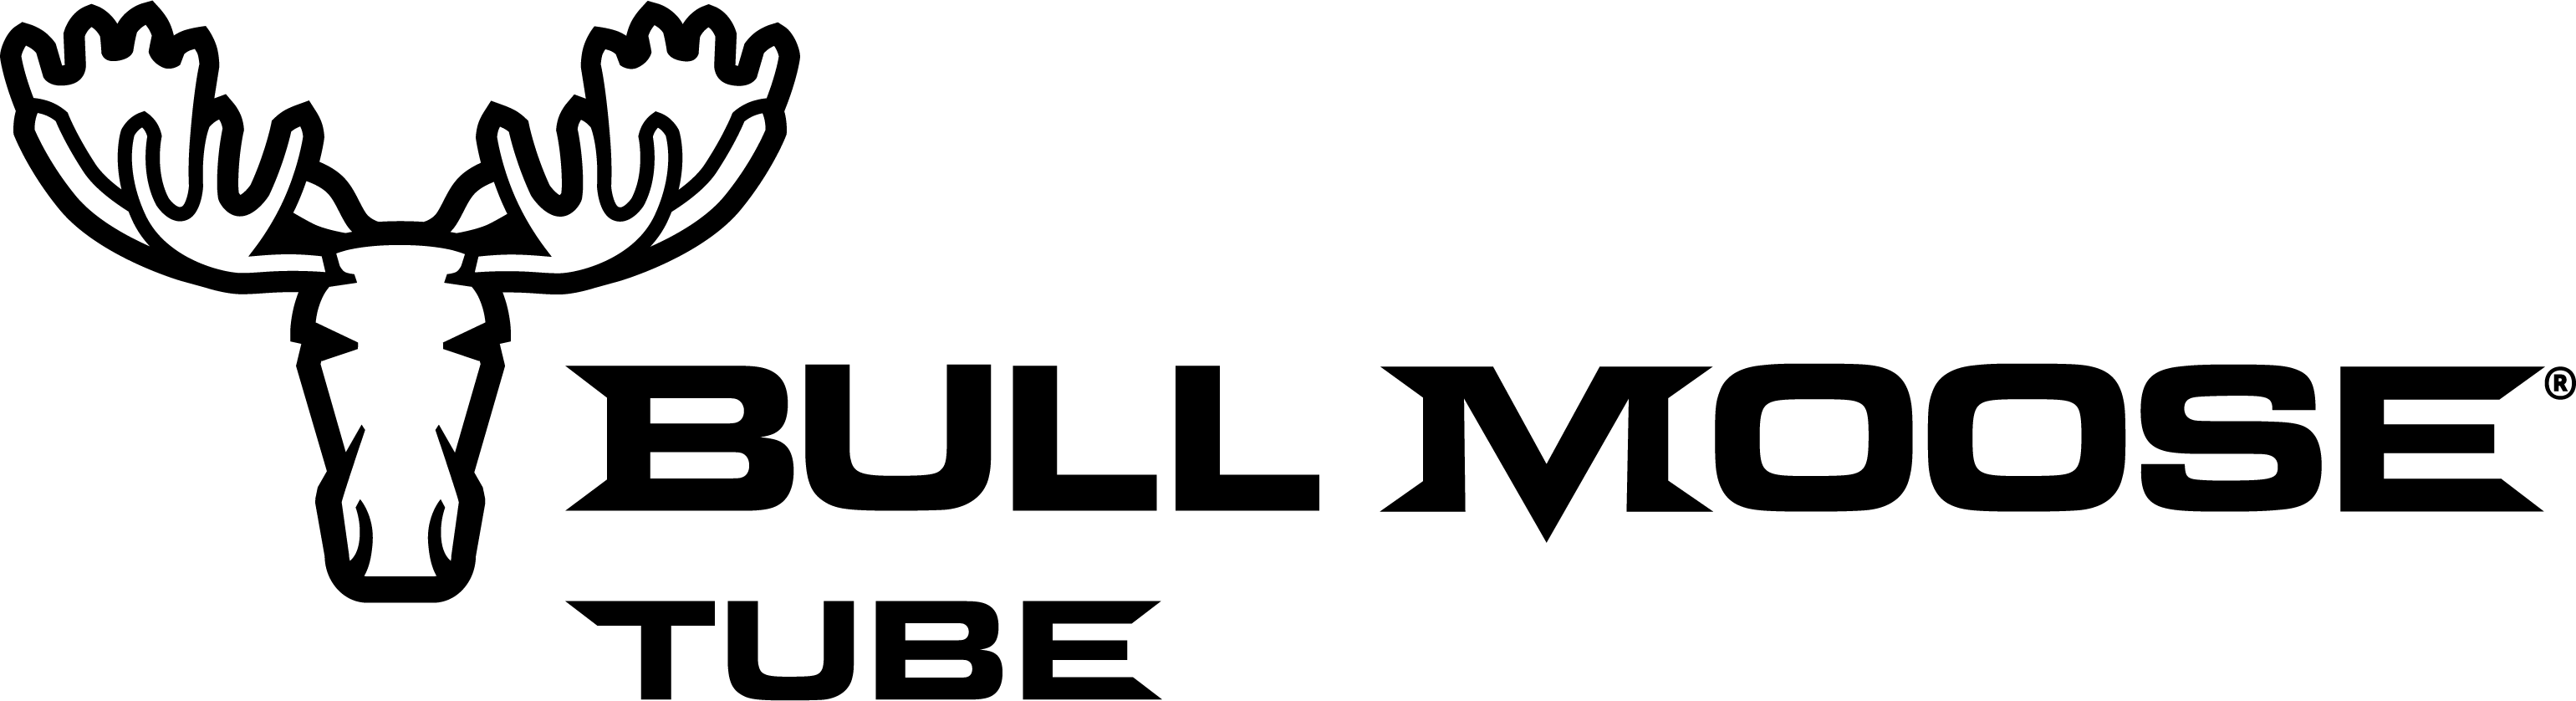 Century Tube Logo - Bull Moose Tube